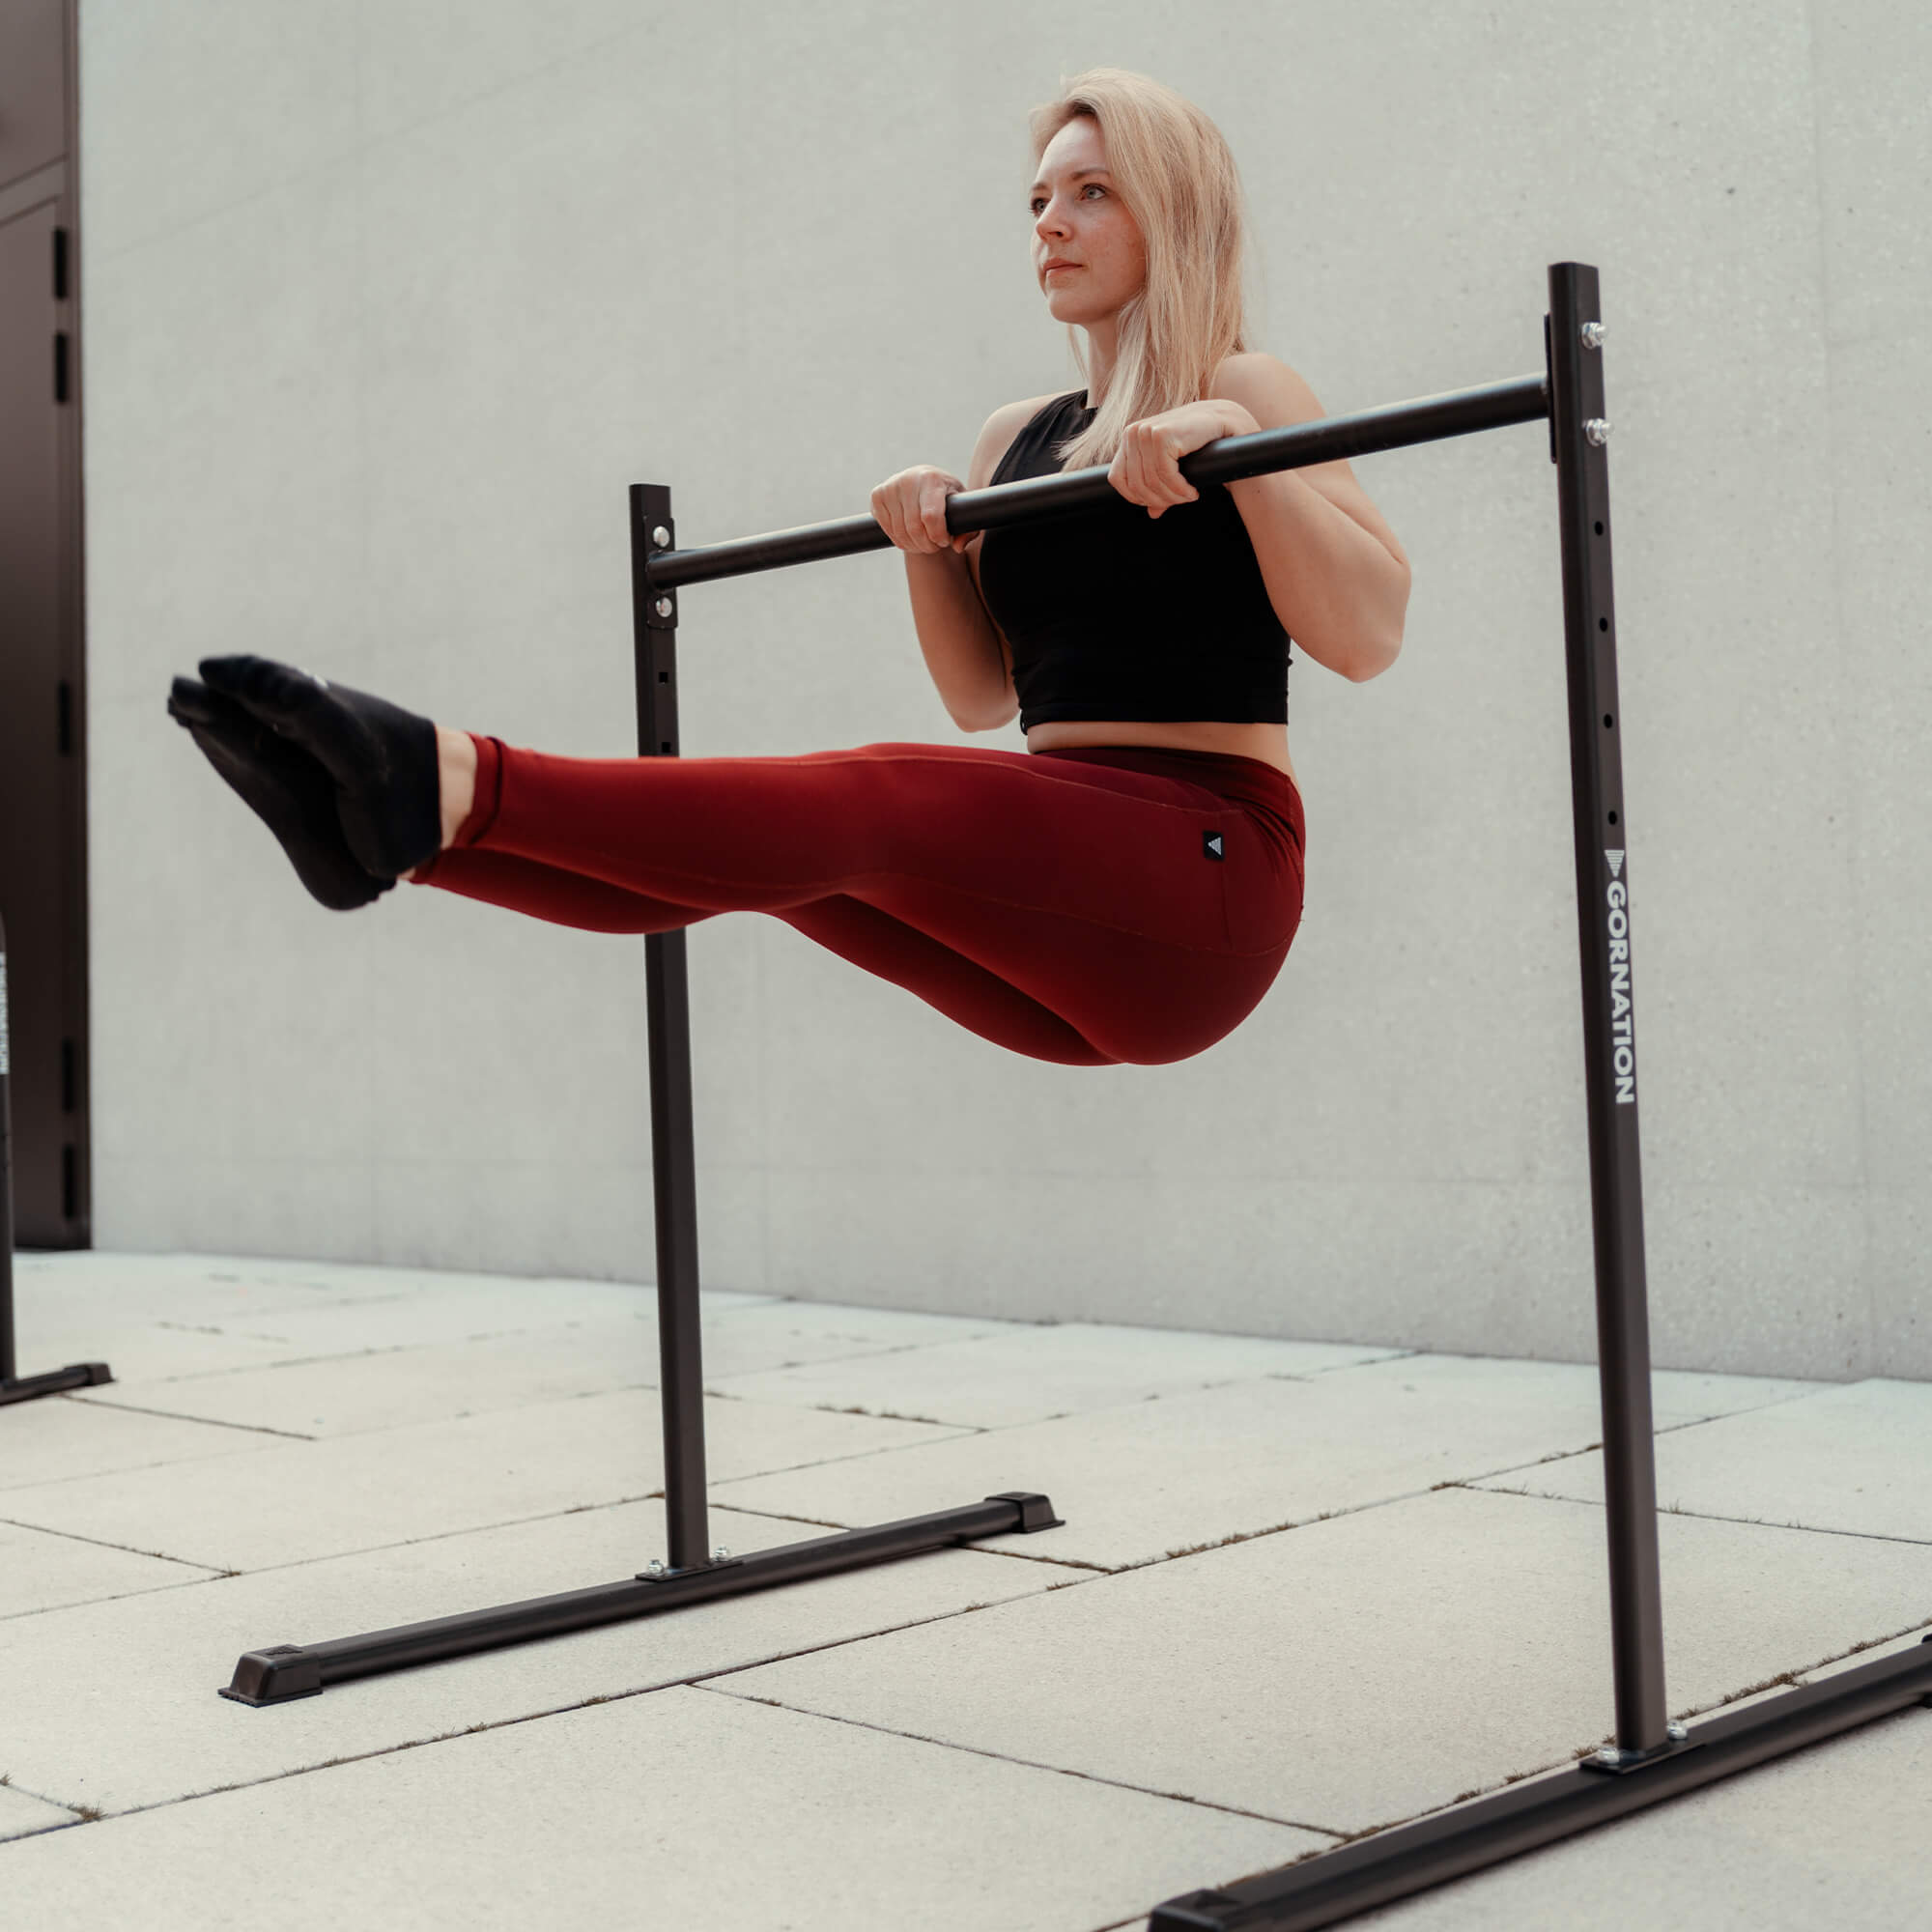 female calisthenics athlete doing l-sit pull ups on gornation static bar